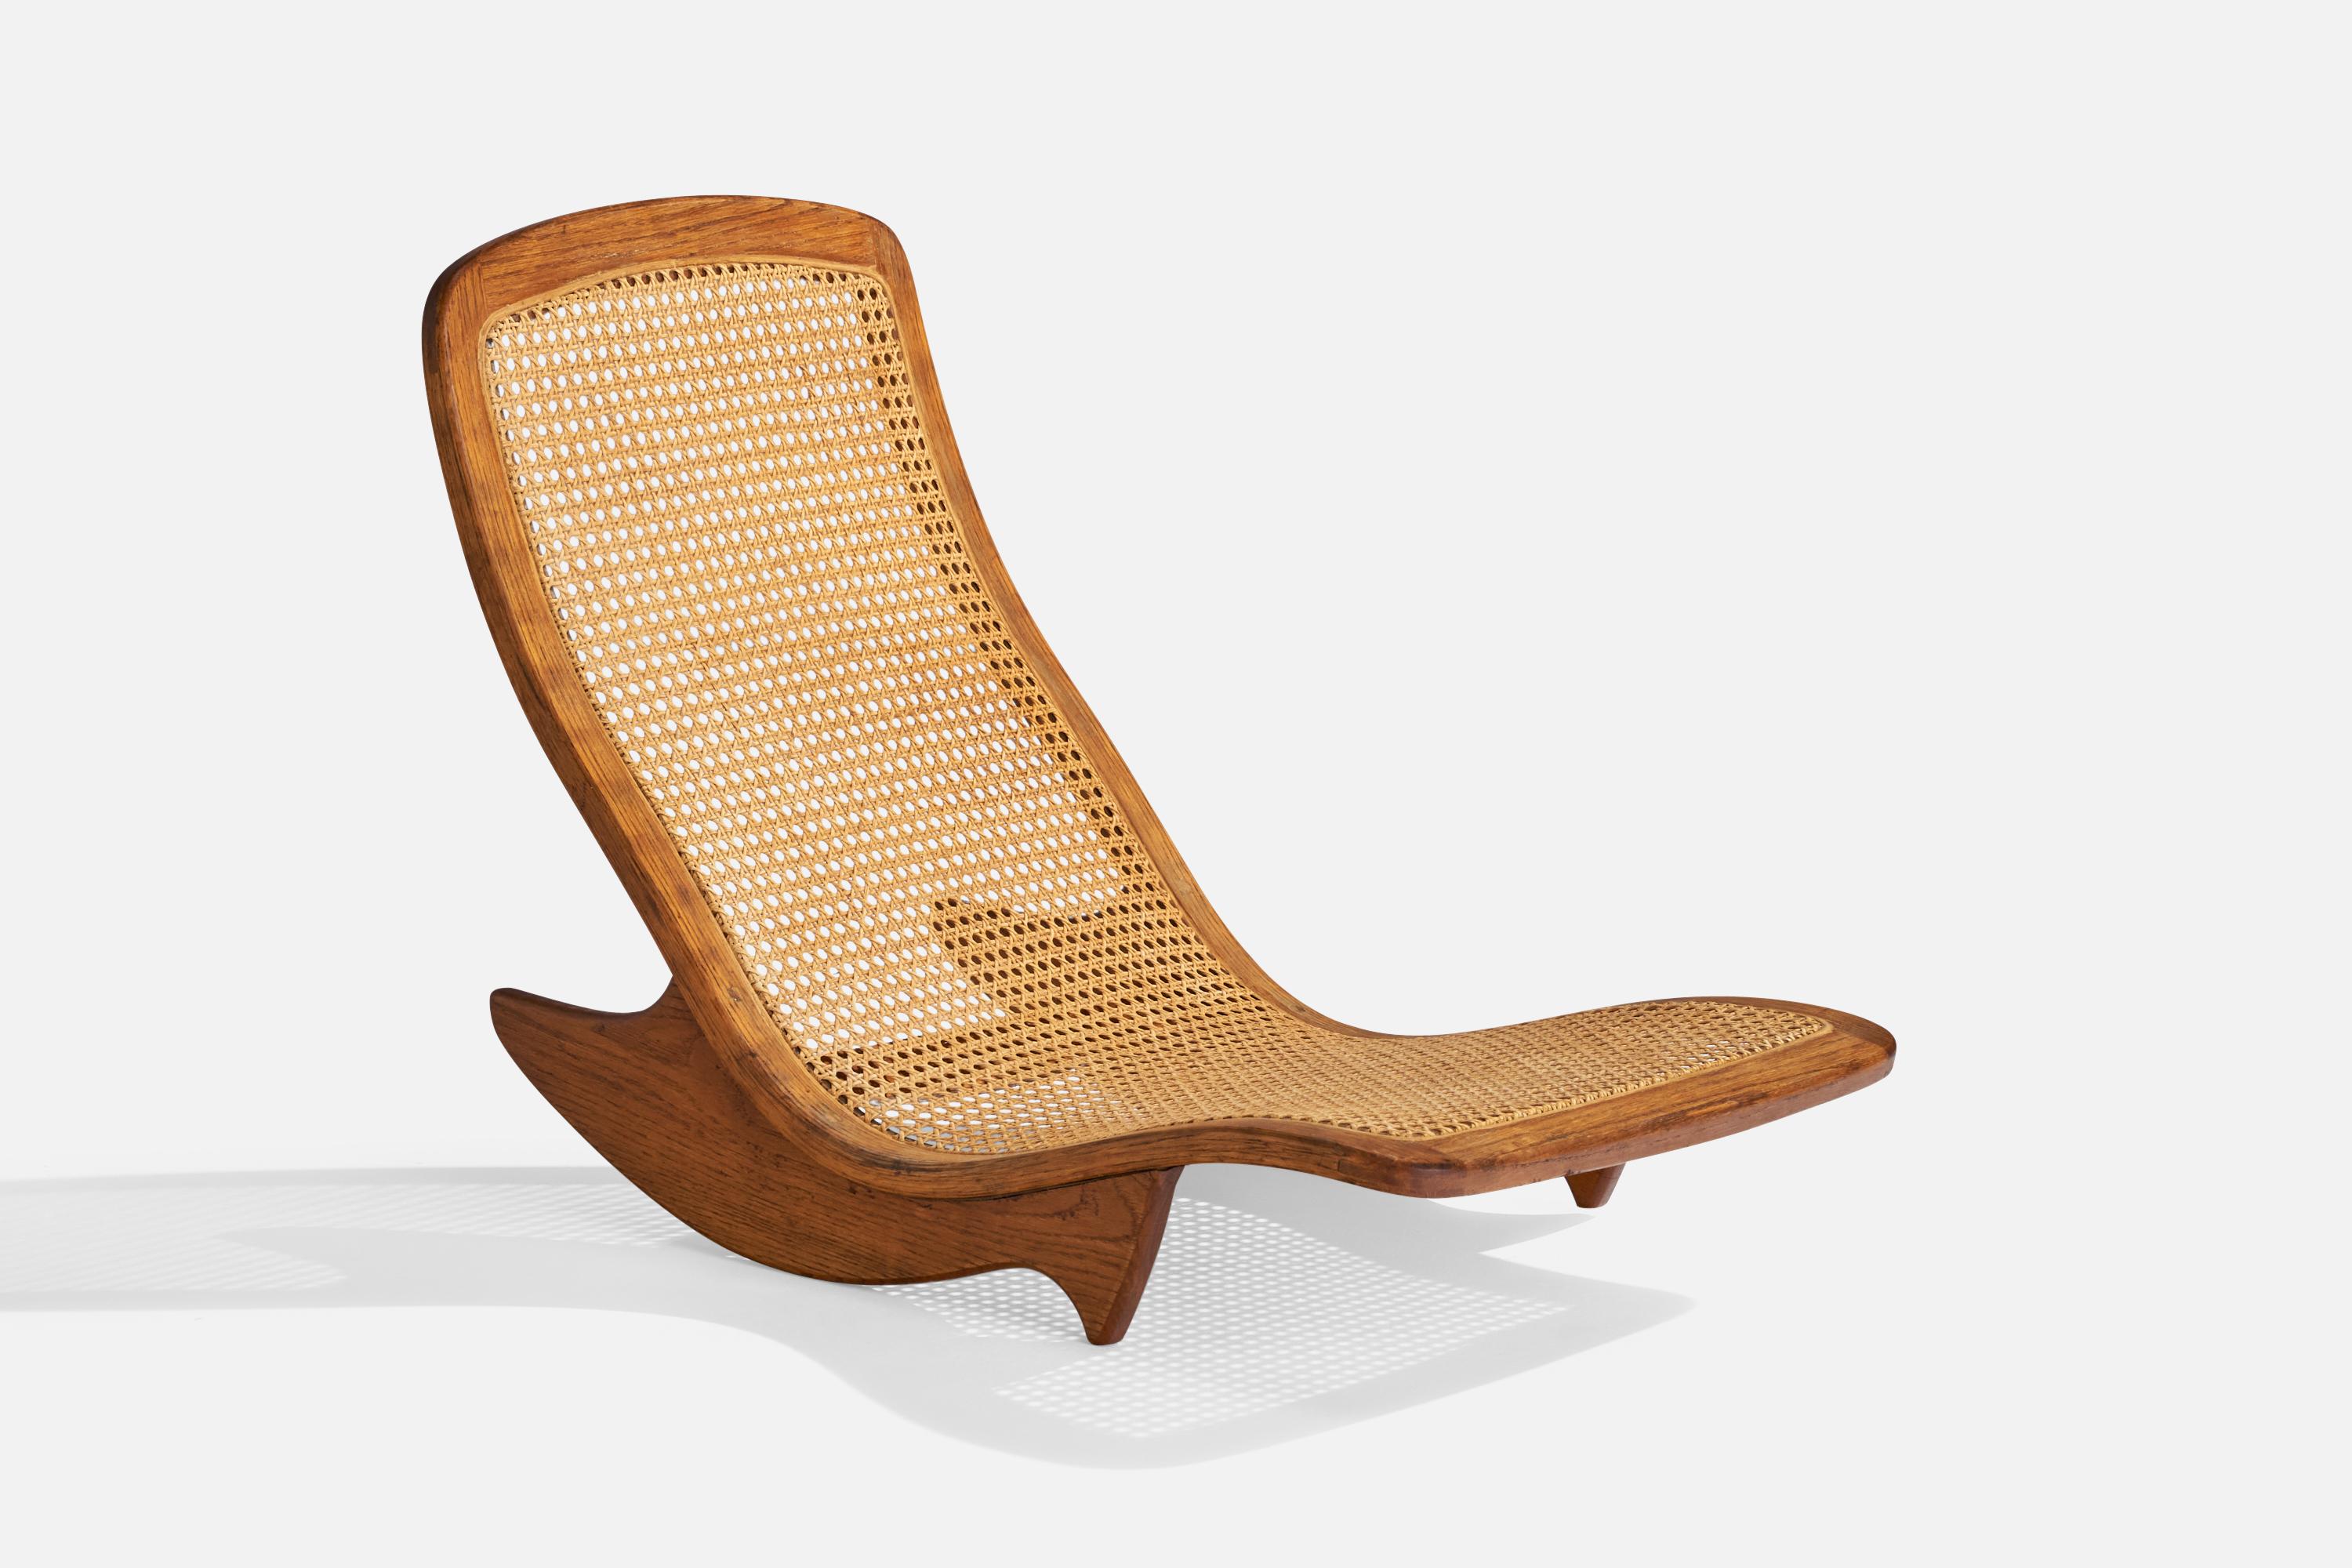 Chaise basse à bascule ou chaise longue en teck et rotin, conçue et produite par Steve Rieman, USA, c.C. 1976

Hauteur d'assise 5